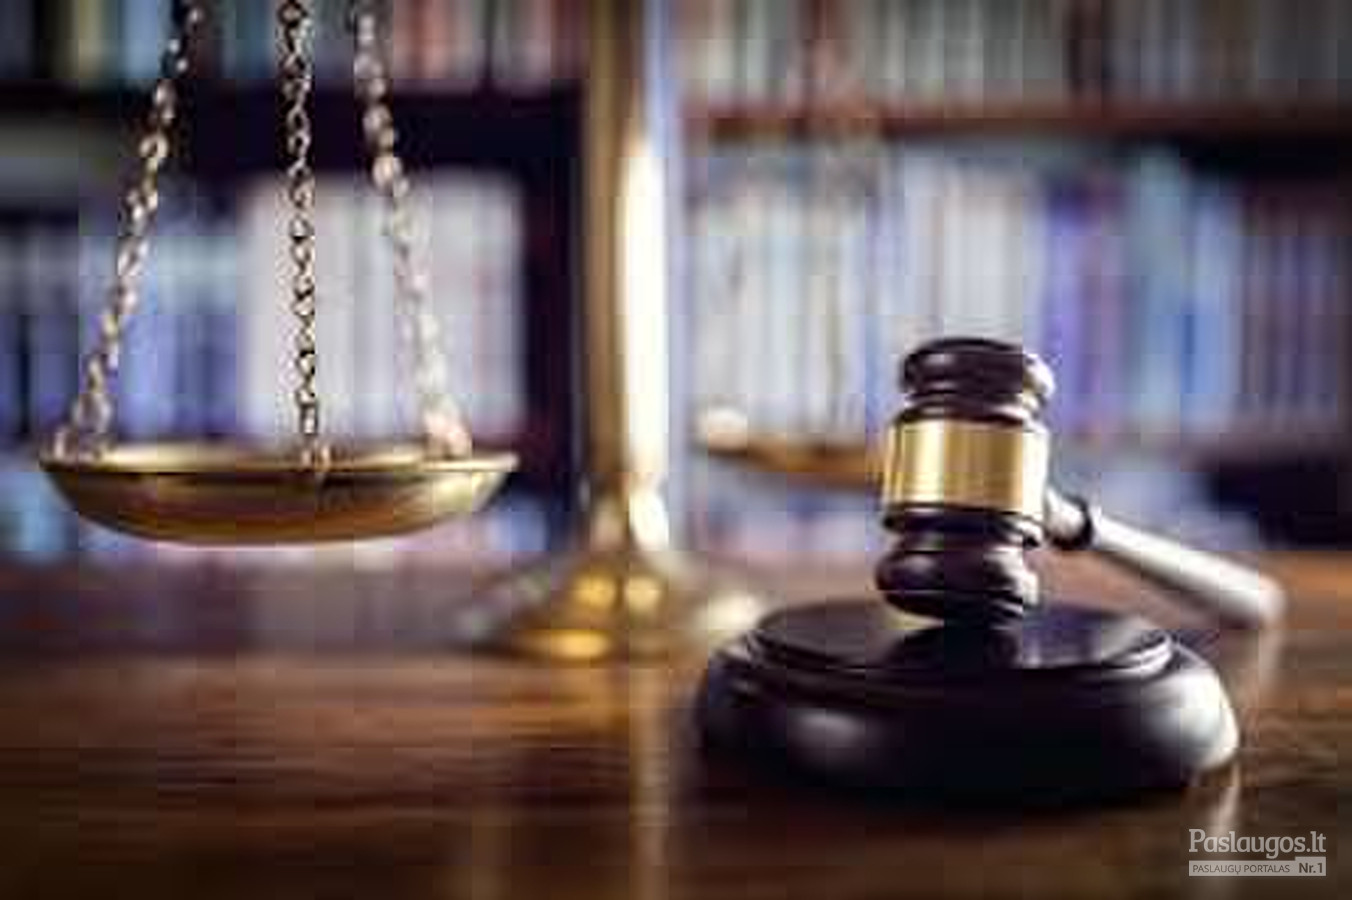 Įvairių teisės sričių teisinės paslaugos, apimančios teisinių konsultacijų teikimą, procesinių dokumentų rengimą ir atstovavimą.